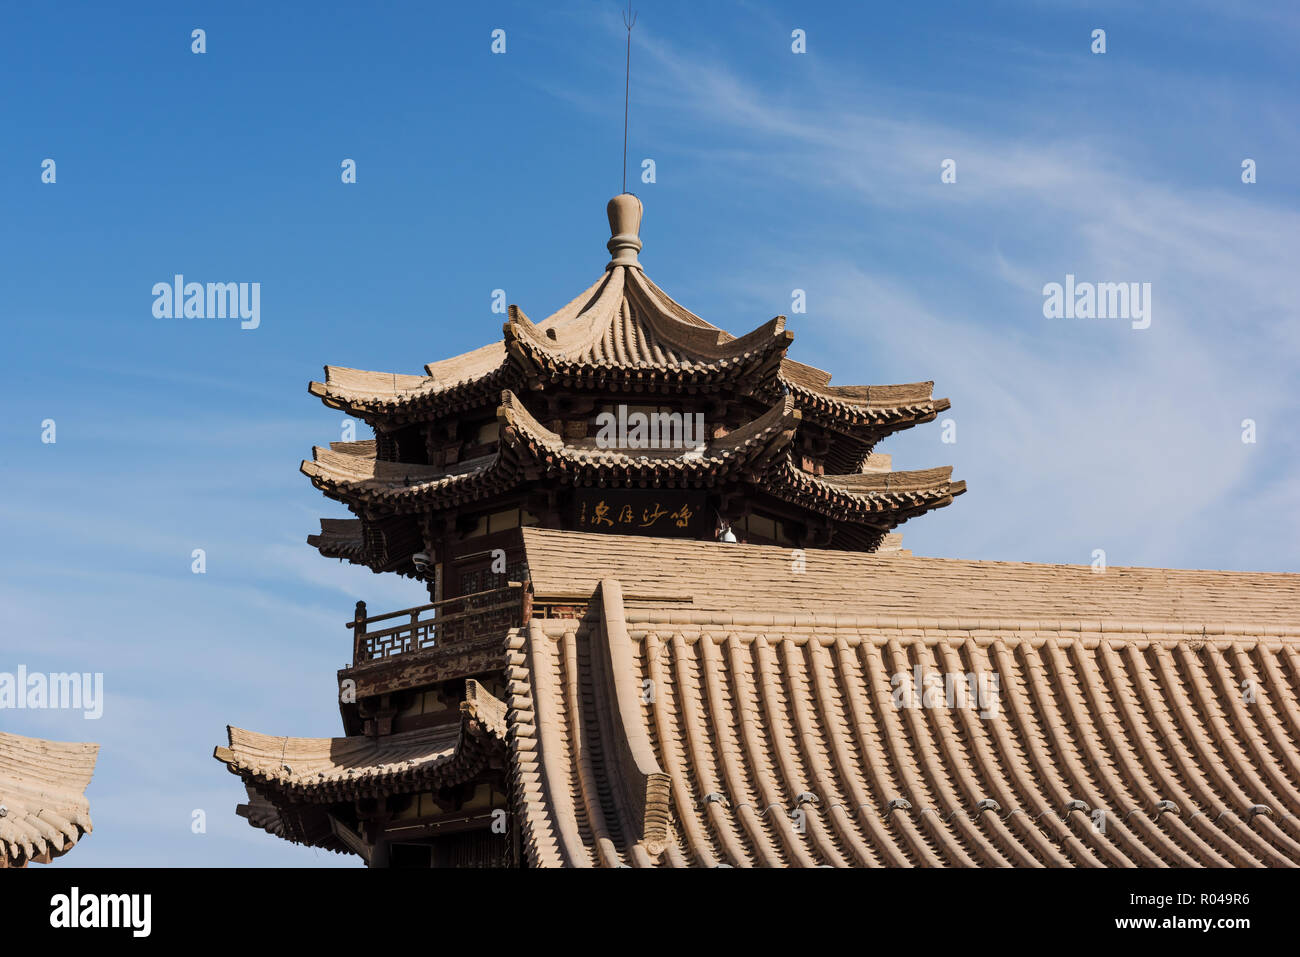 Ancient Chinese wooden pagoda, Crescent Moon Spring, at Dunhuang, Gansu, China Stock Photo